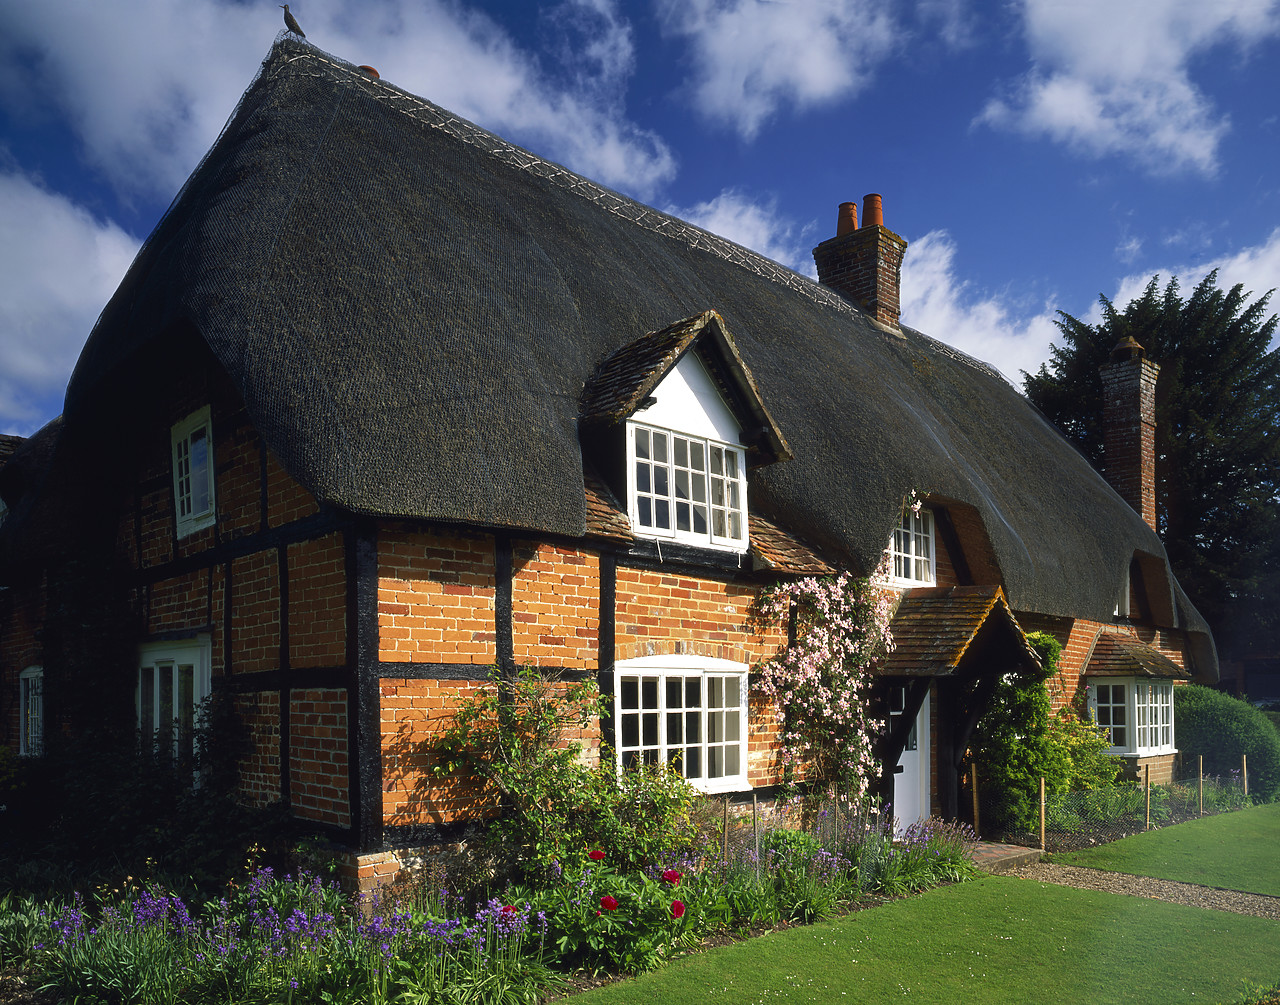 #050122-1 - Thatched Cottage, Longparish, Hampshire, England